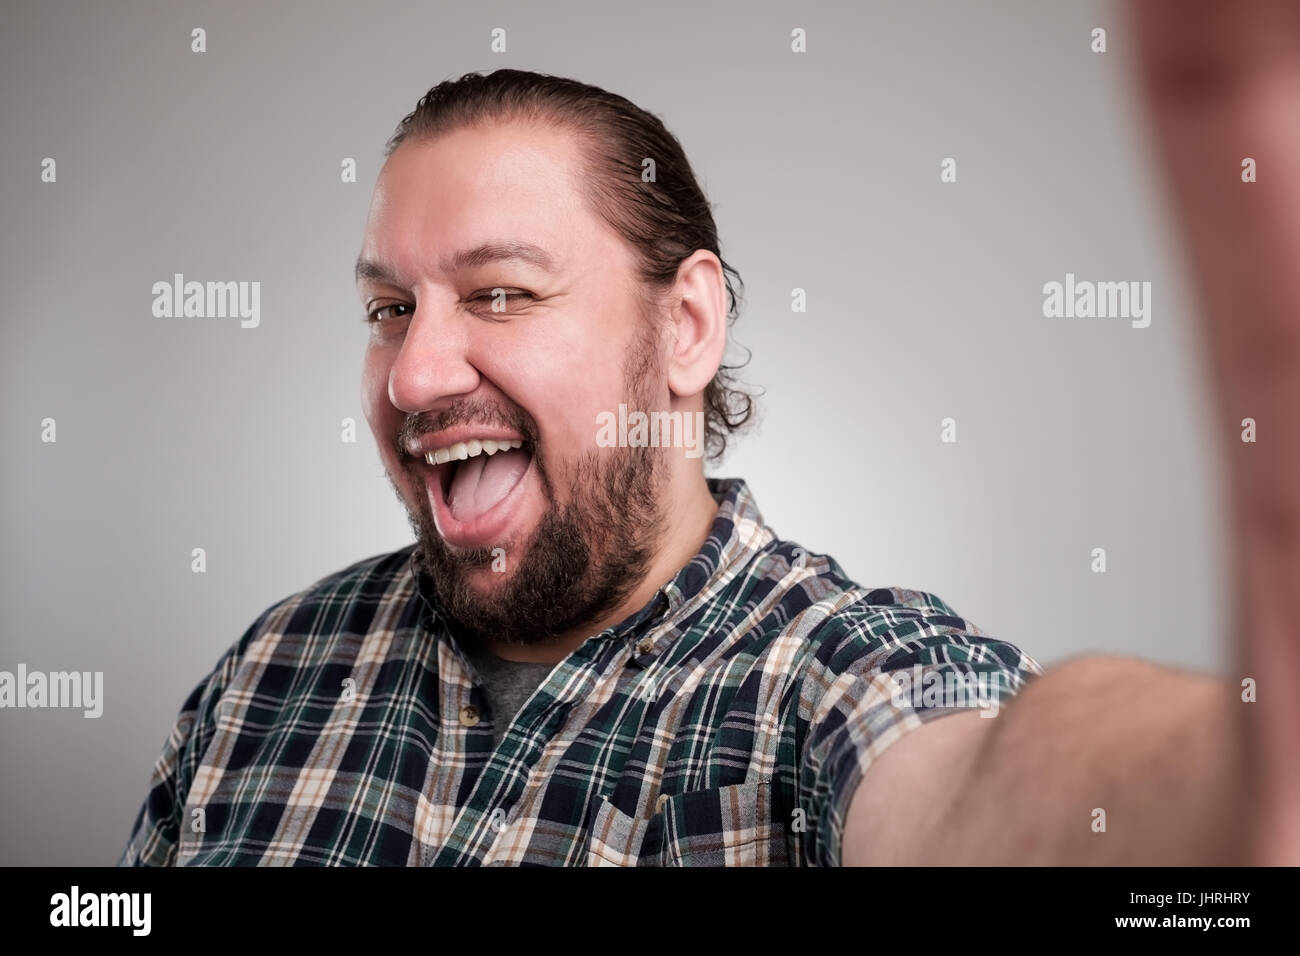 Schöner junger Mann in Freizeitkleidung machen Selfie auf grauem Hintergrund. Er hat ein glückliches Gesicht lächelnd mit Zähnen. Stockfoto